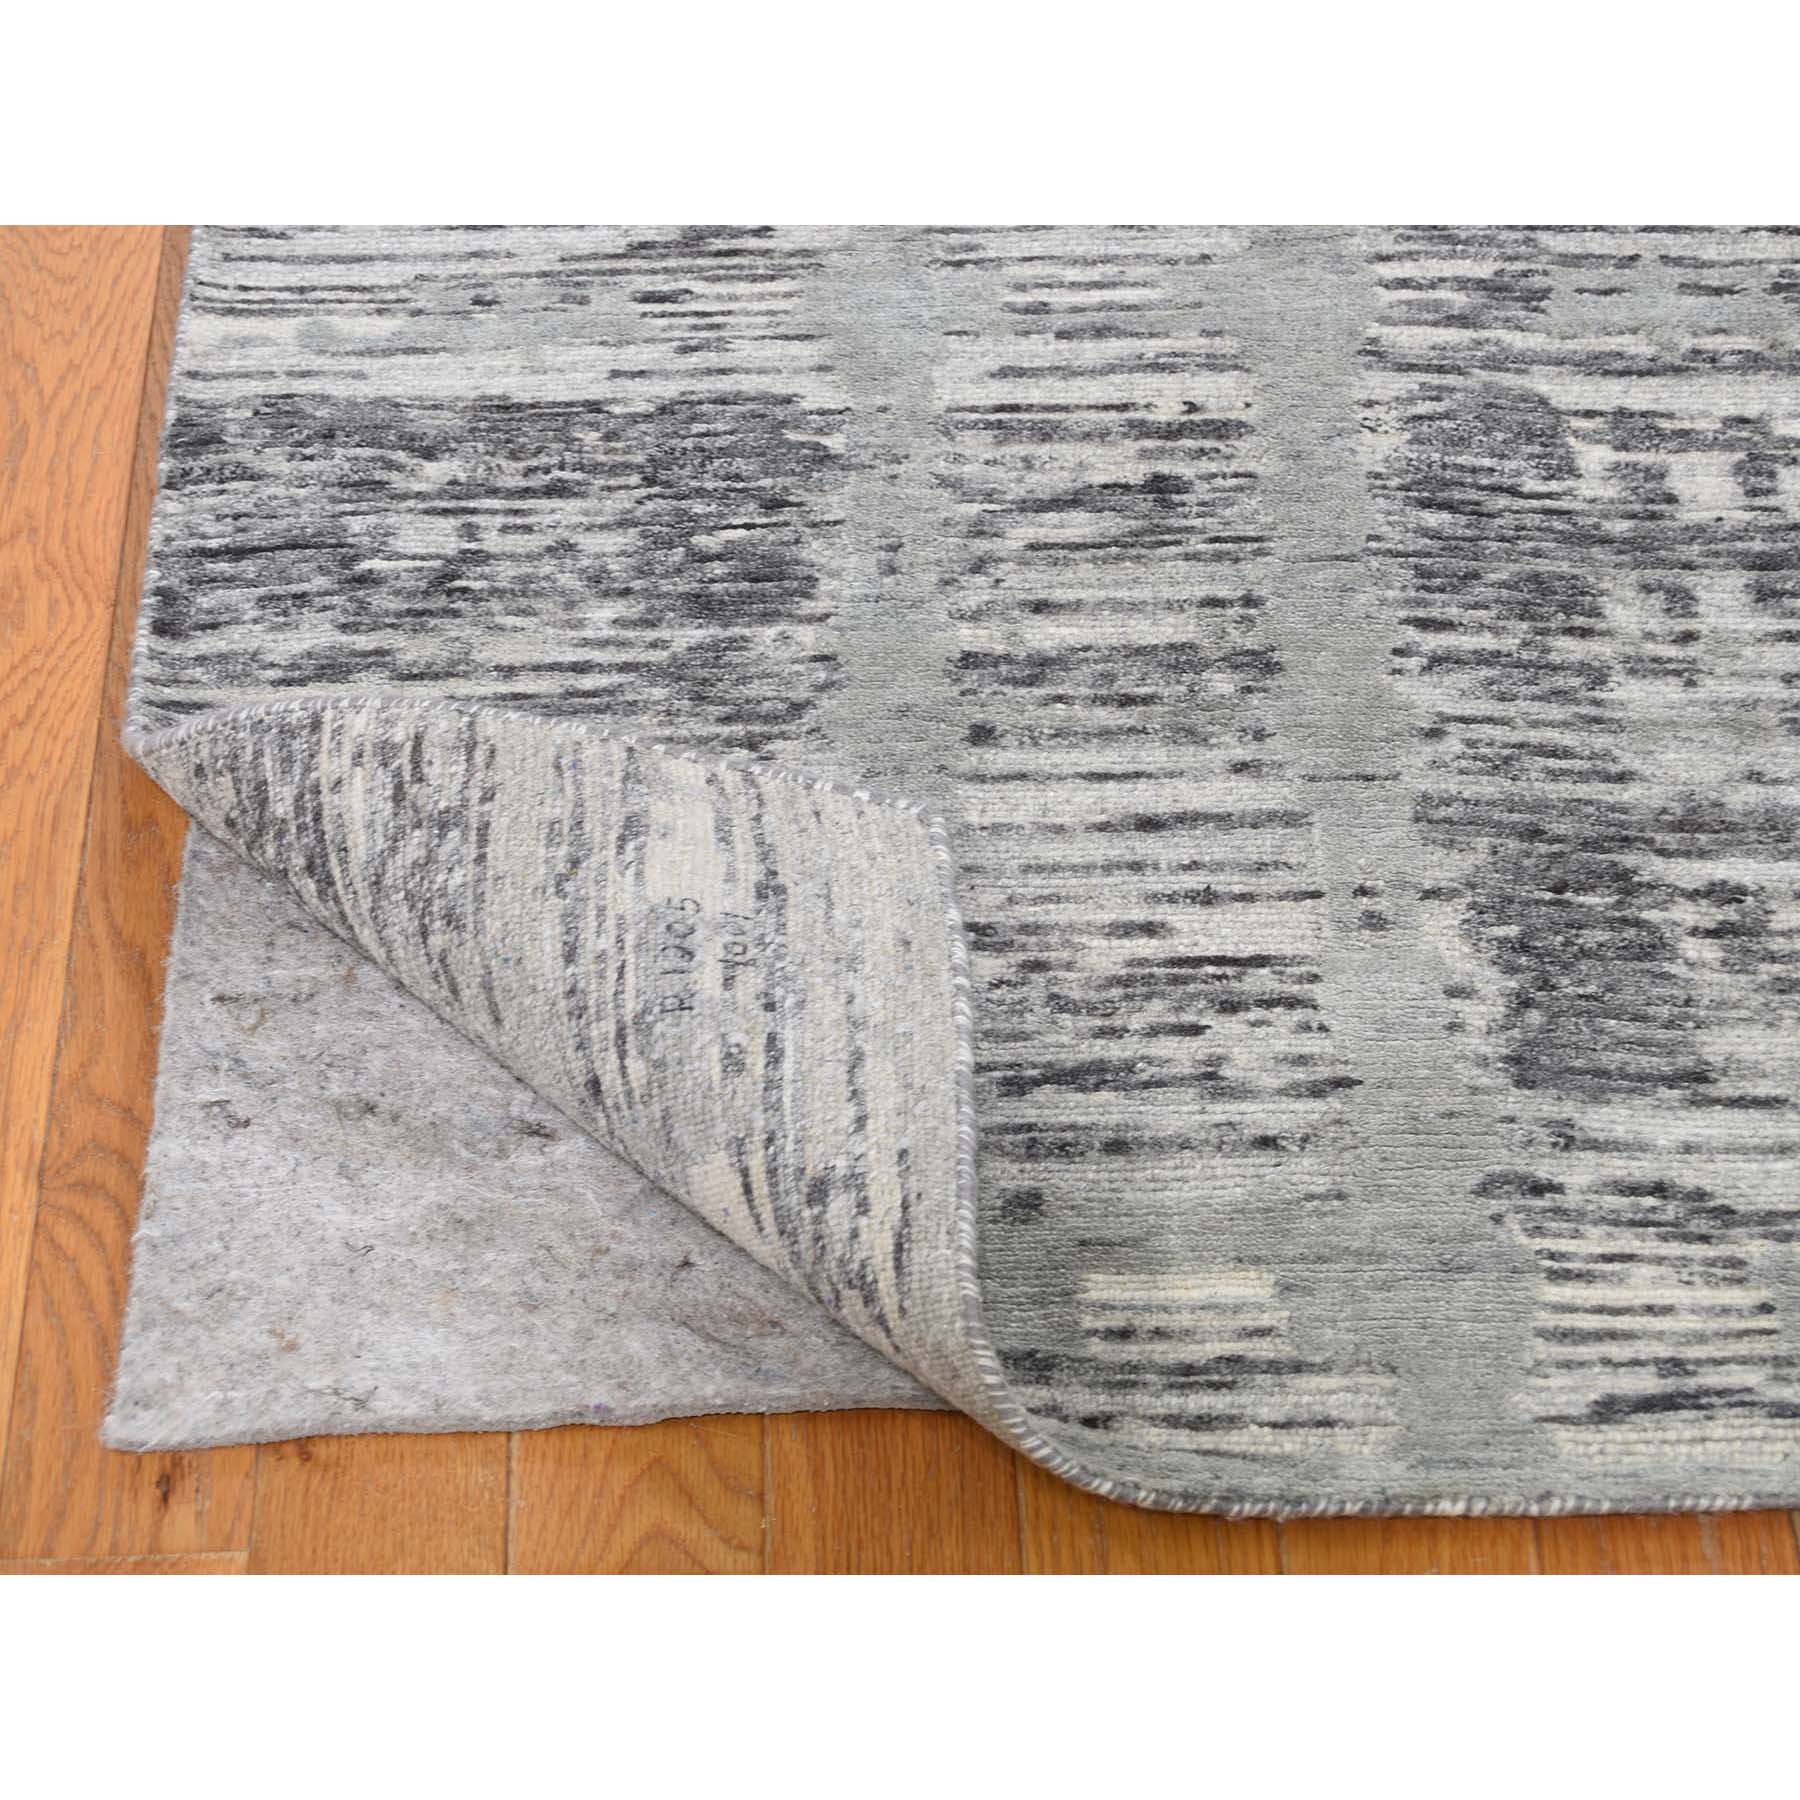 2-6 x12- Gray Hand Spun Undyed Natural Wool Modern Runner Oriental Hand-Knotted Rug 